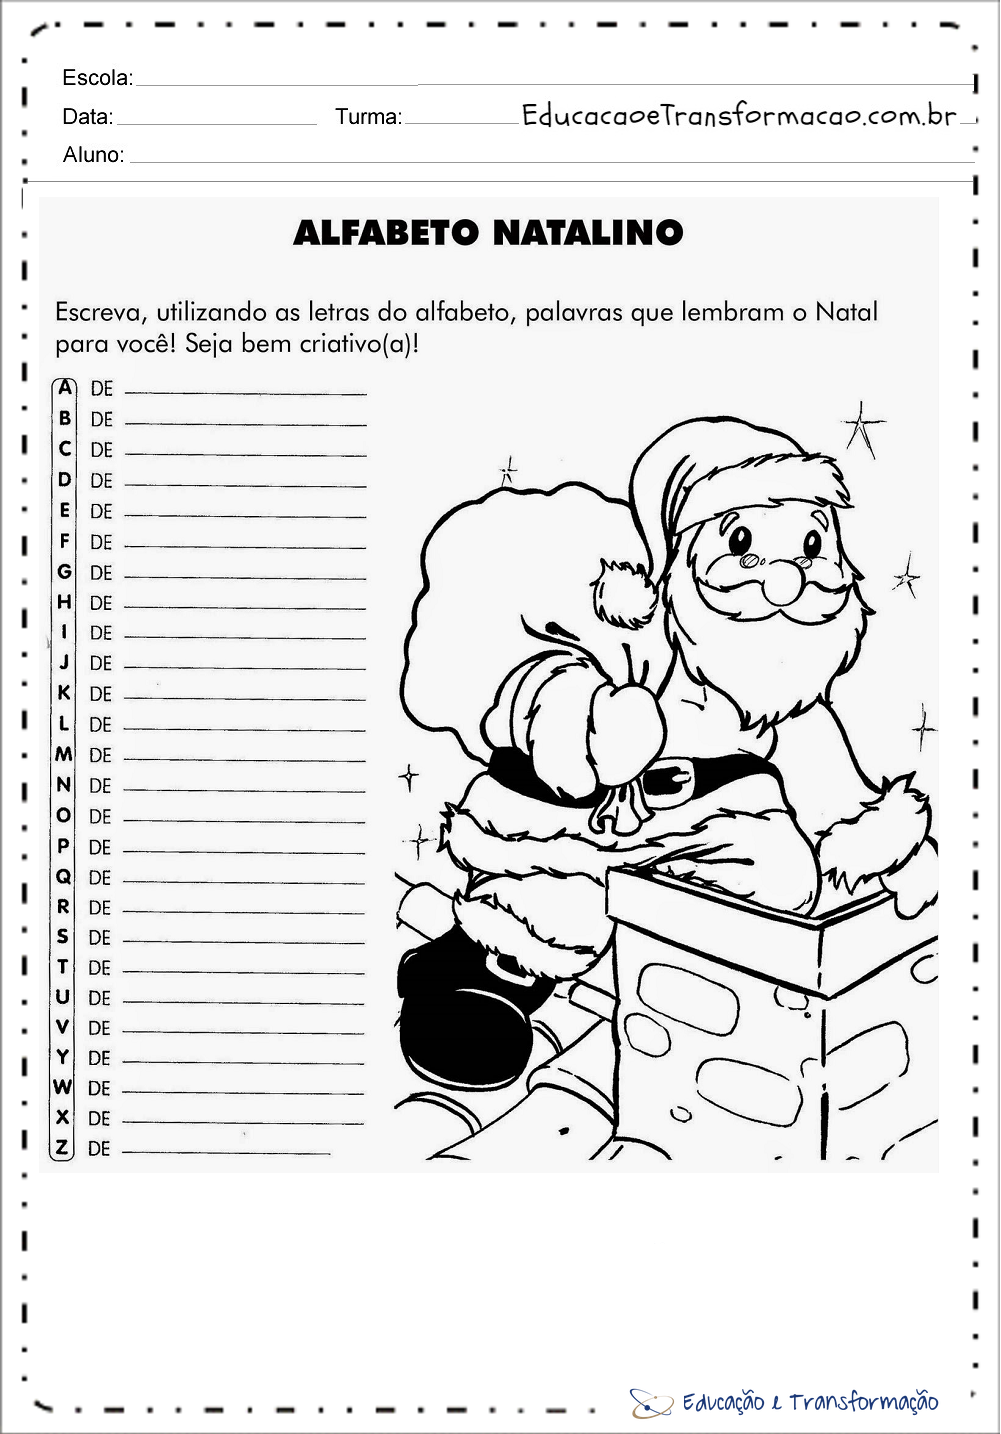 Atividades de Natal 1 ano do Ensino Fundamental pra imprimir